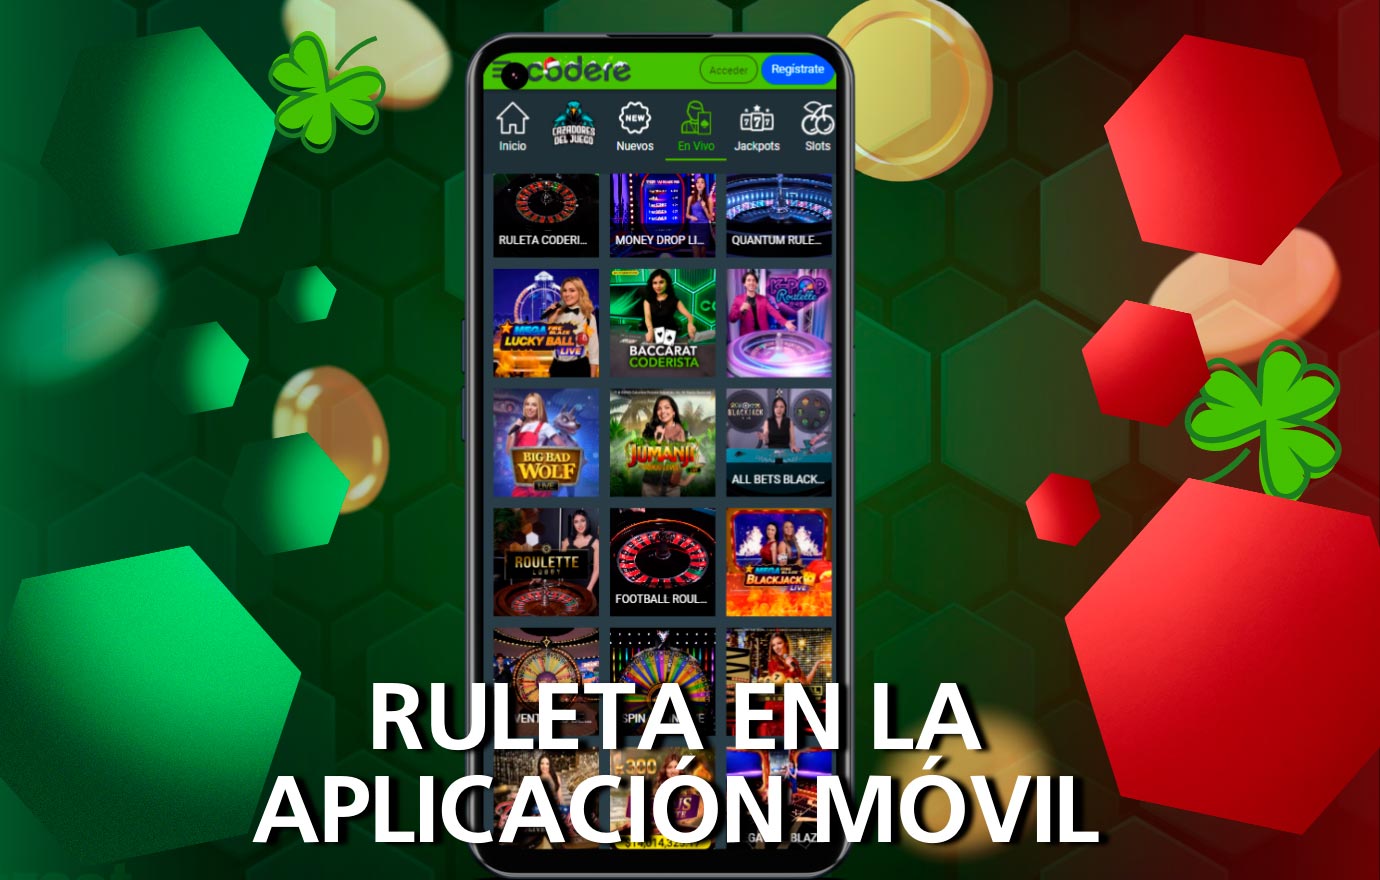 Juega a la Ruleta en la App Móvil de Codere desde México